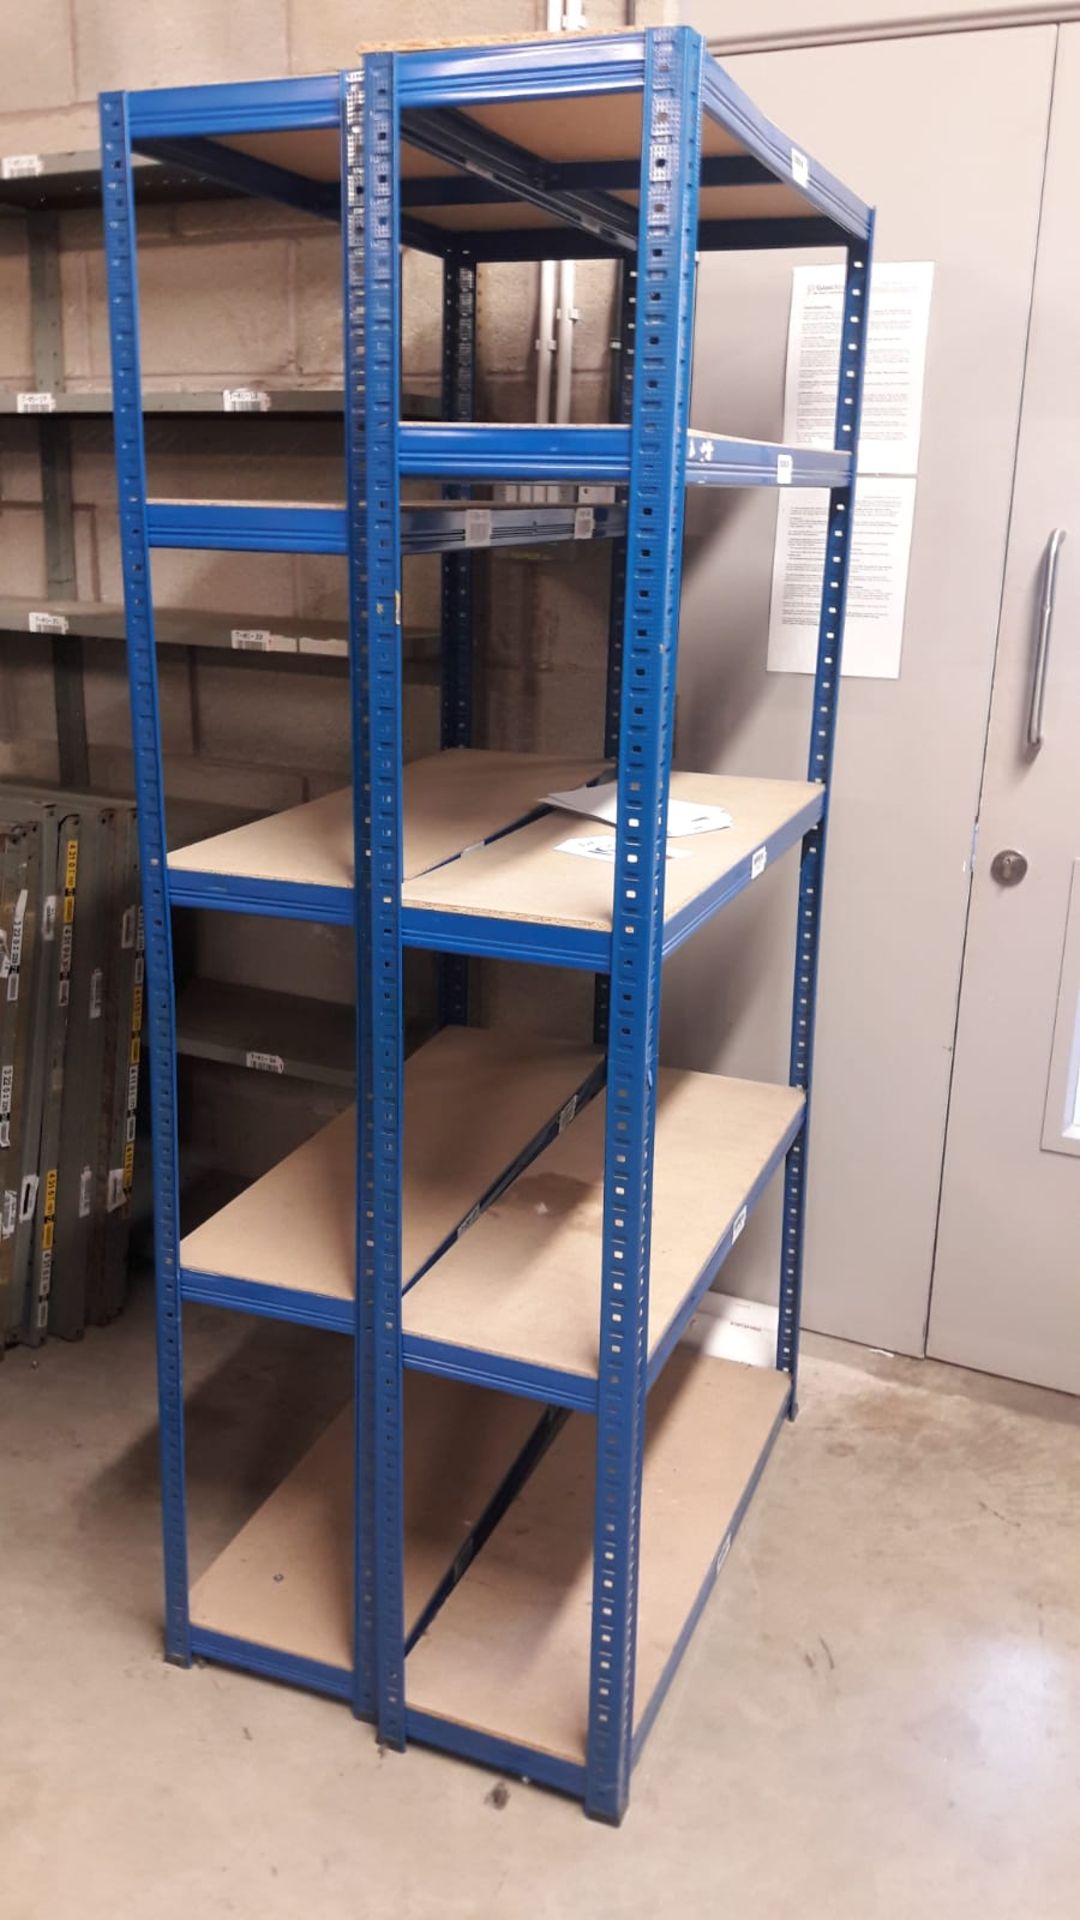 4 x 5 tier metal adjustable rack with chipboard shelves